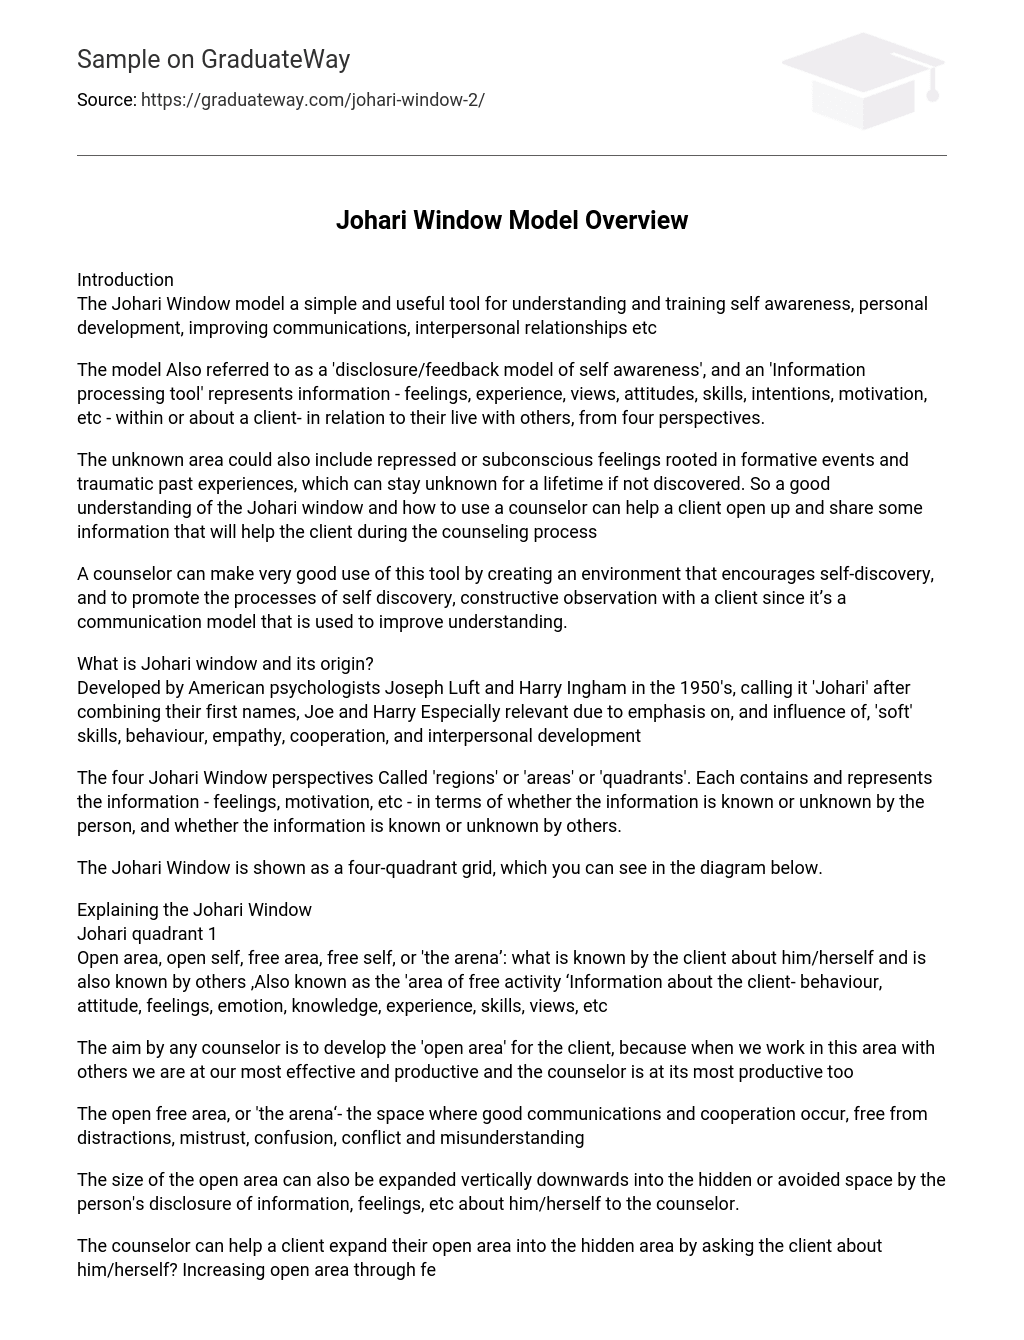 Johari Window Model Overview